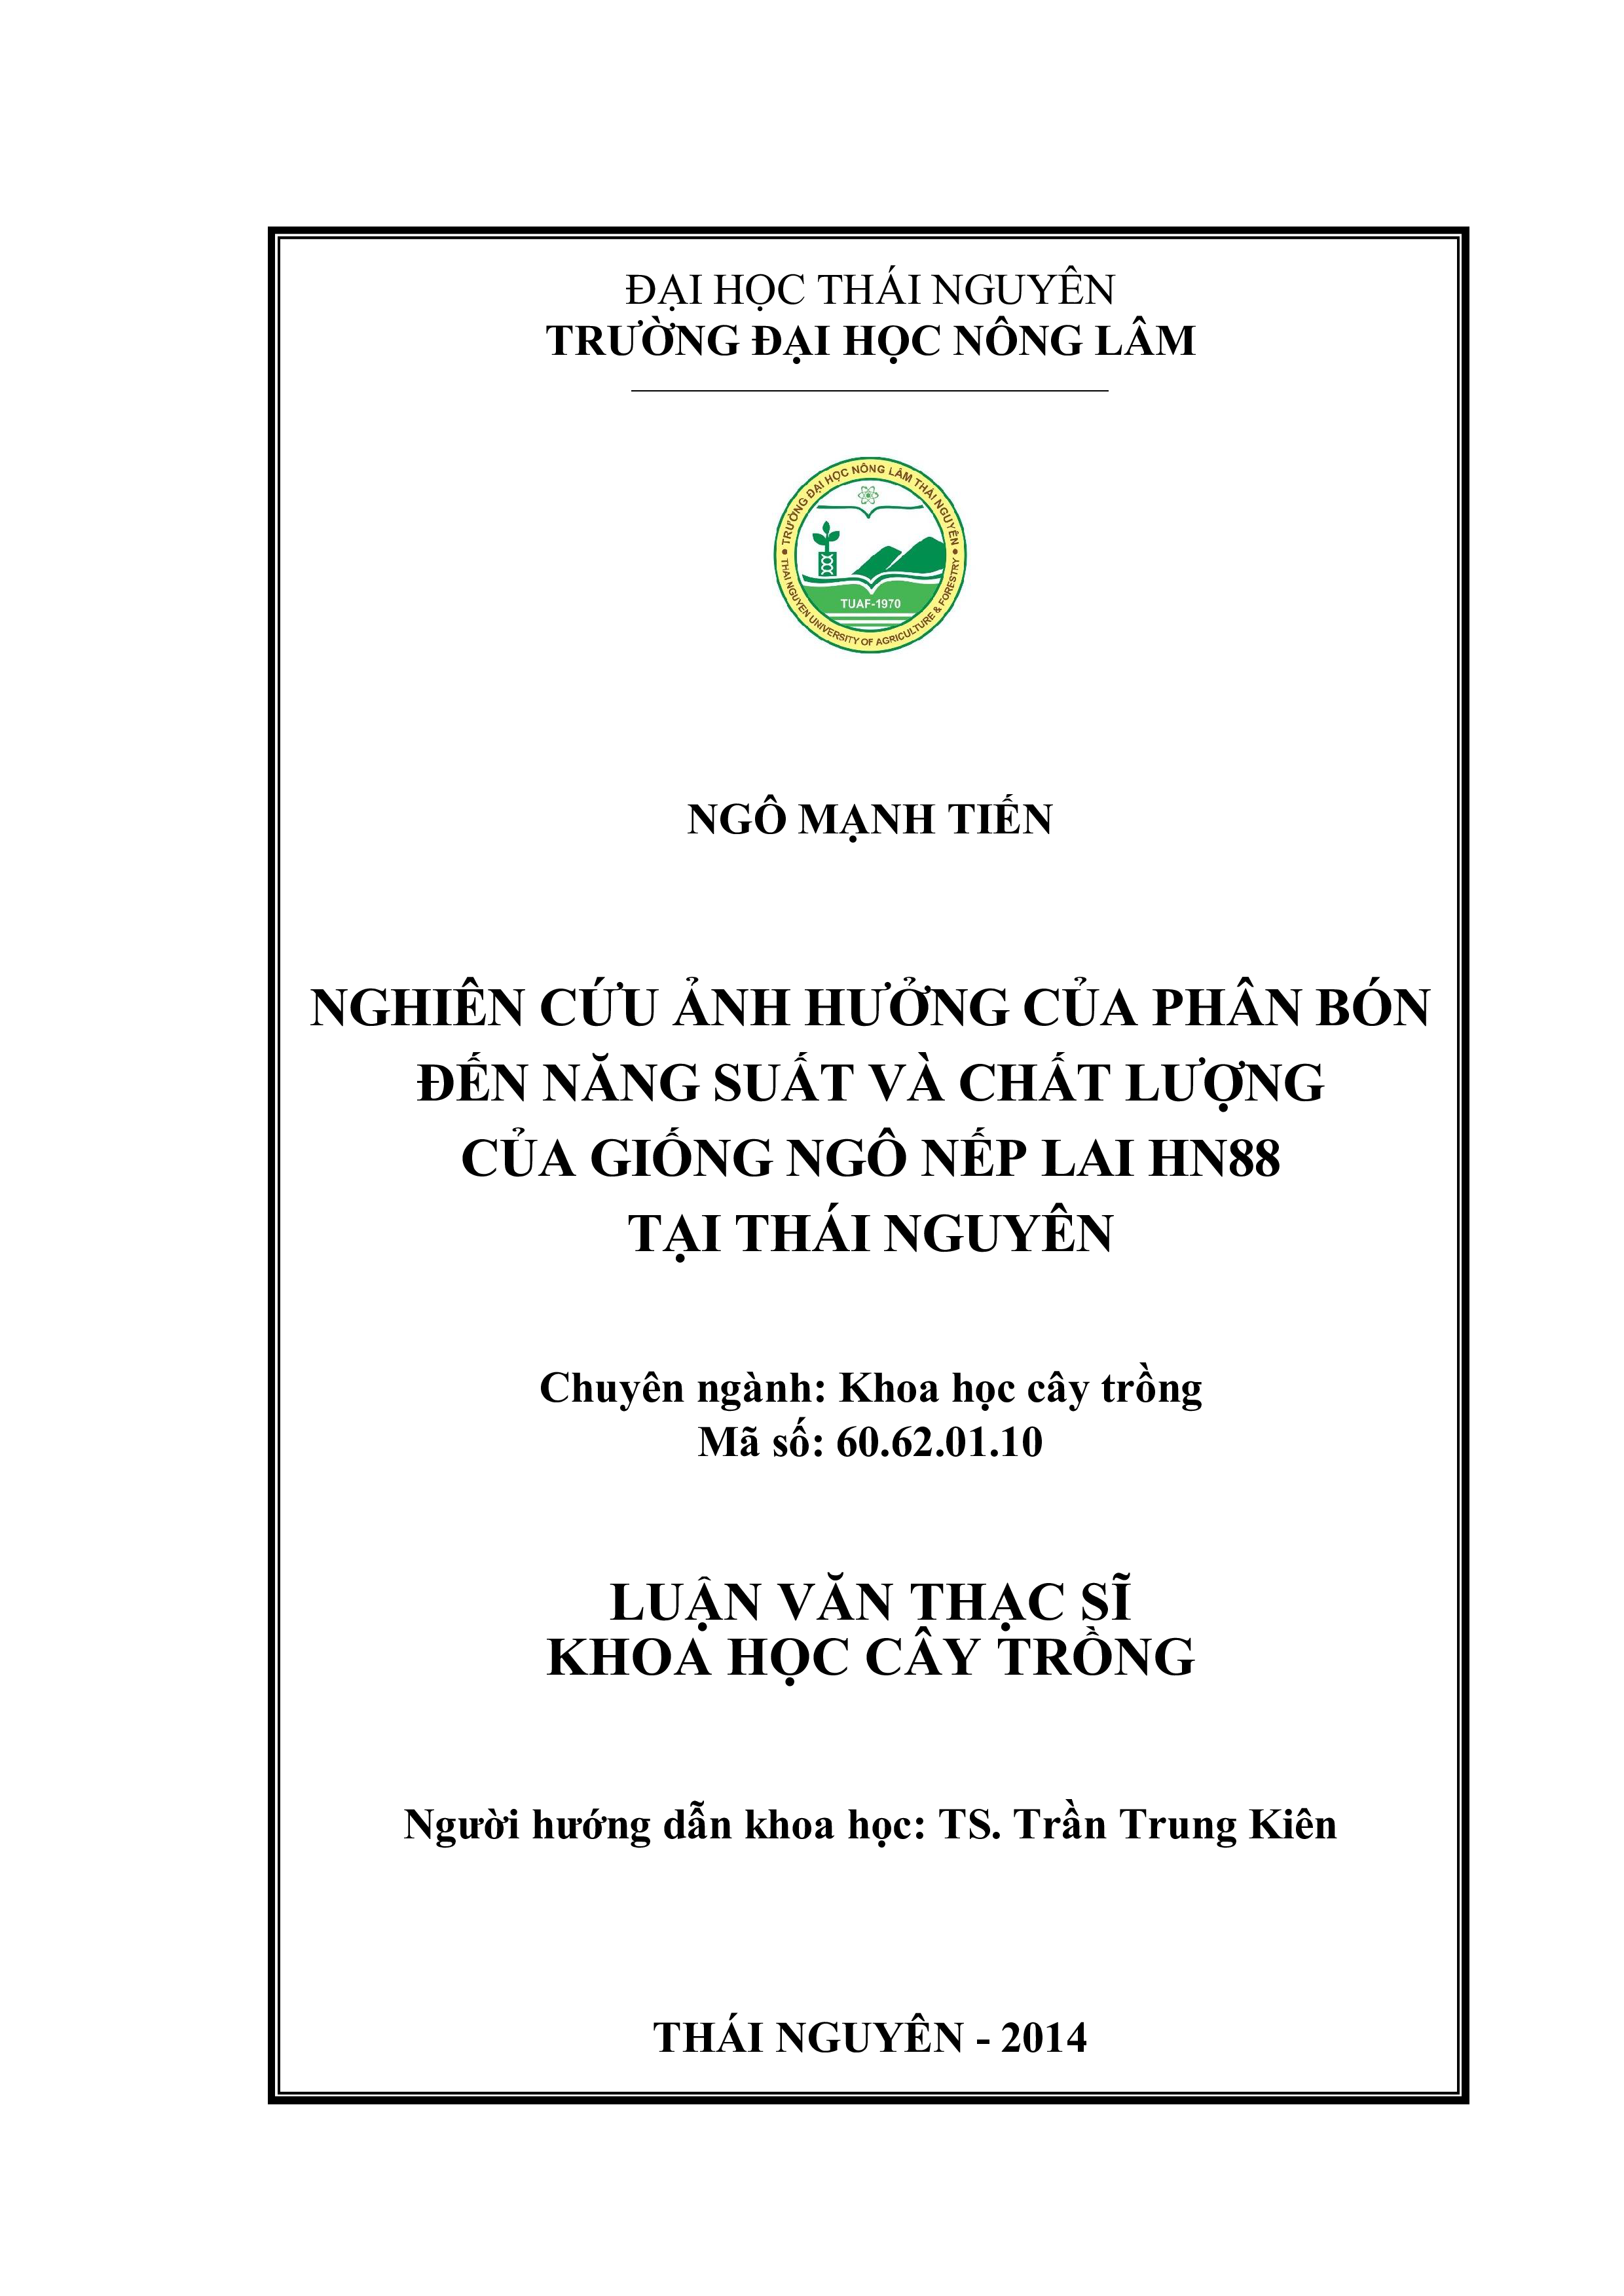 Nghiên cứu ảnh hưởng của phân bón đến năng suất và chất lượng của  giống ngô nếp lai HN88 tại Thái Nguyên